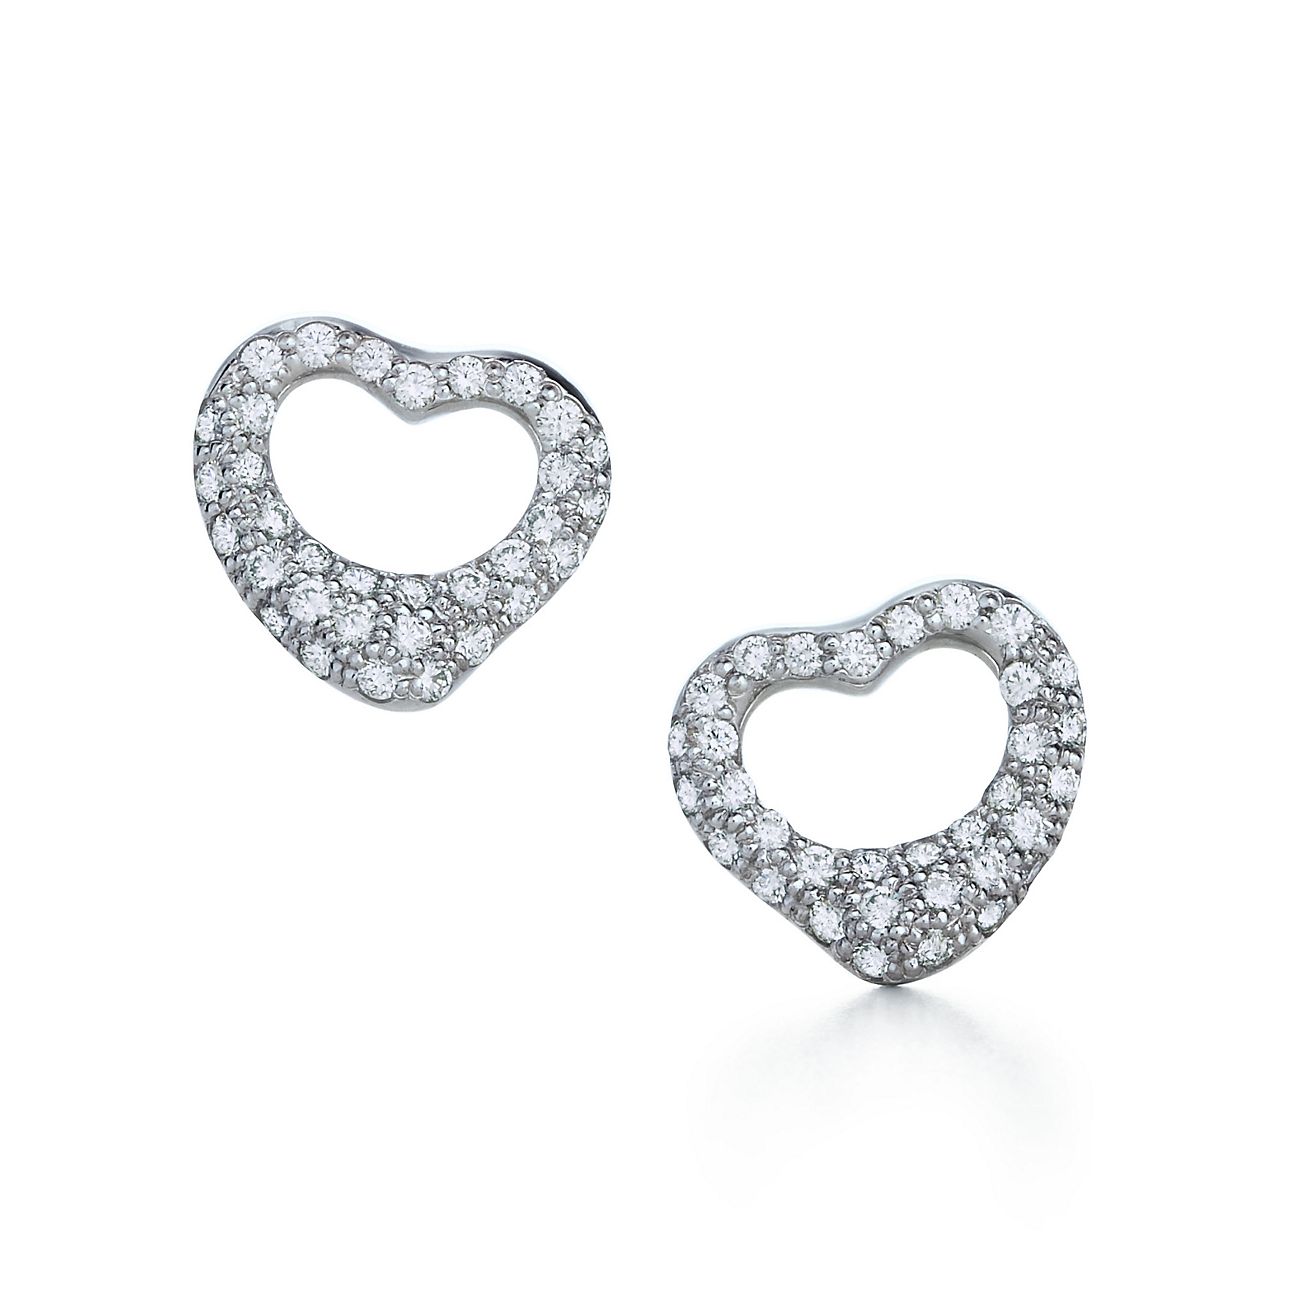 Elsa Peretti® Open Heart earrings with 